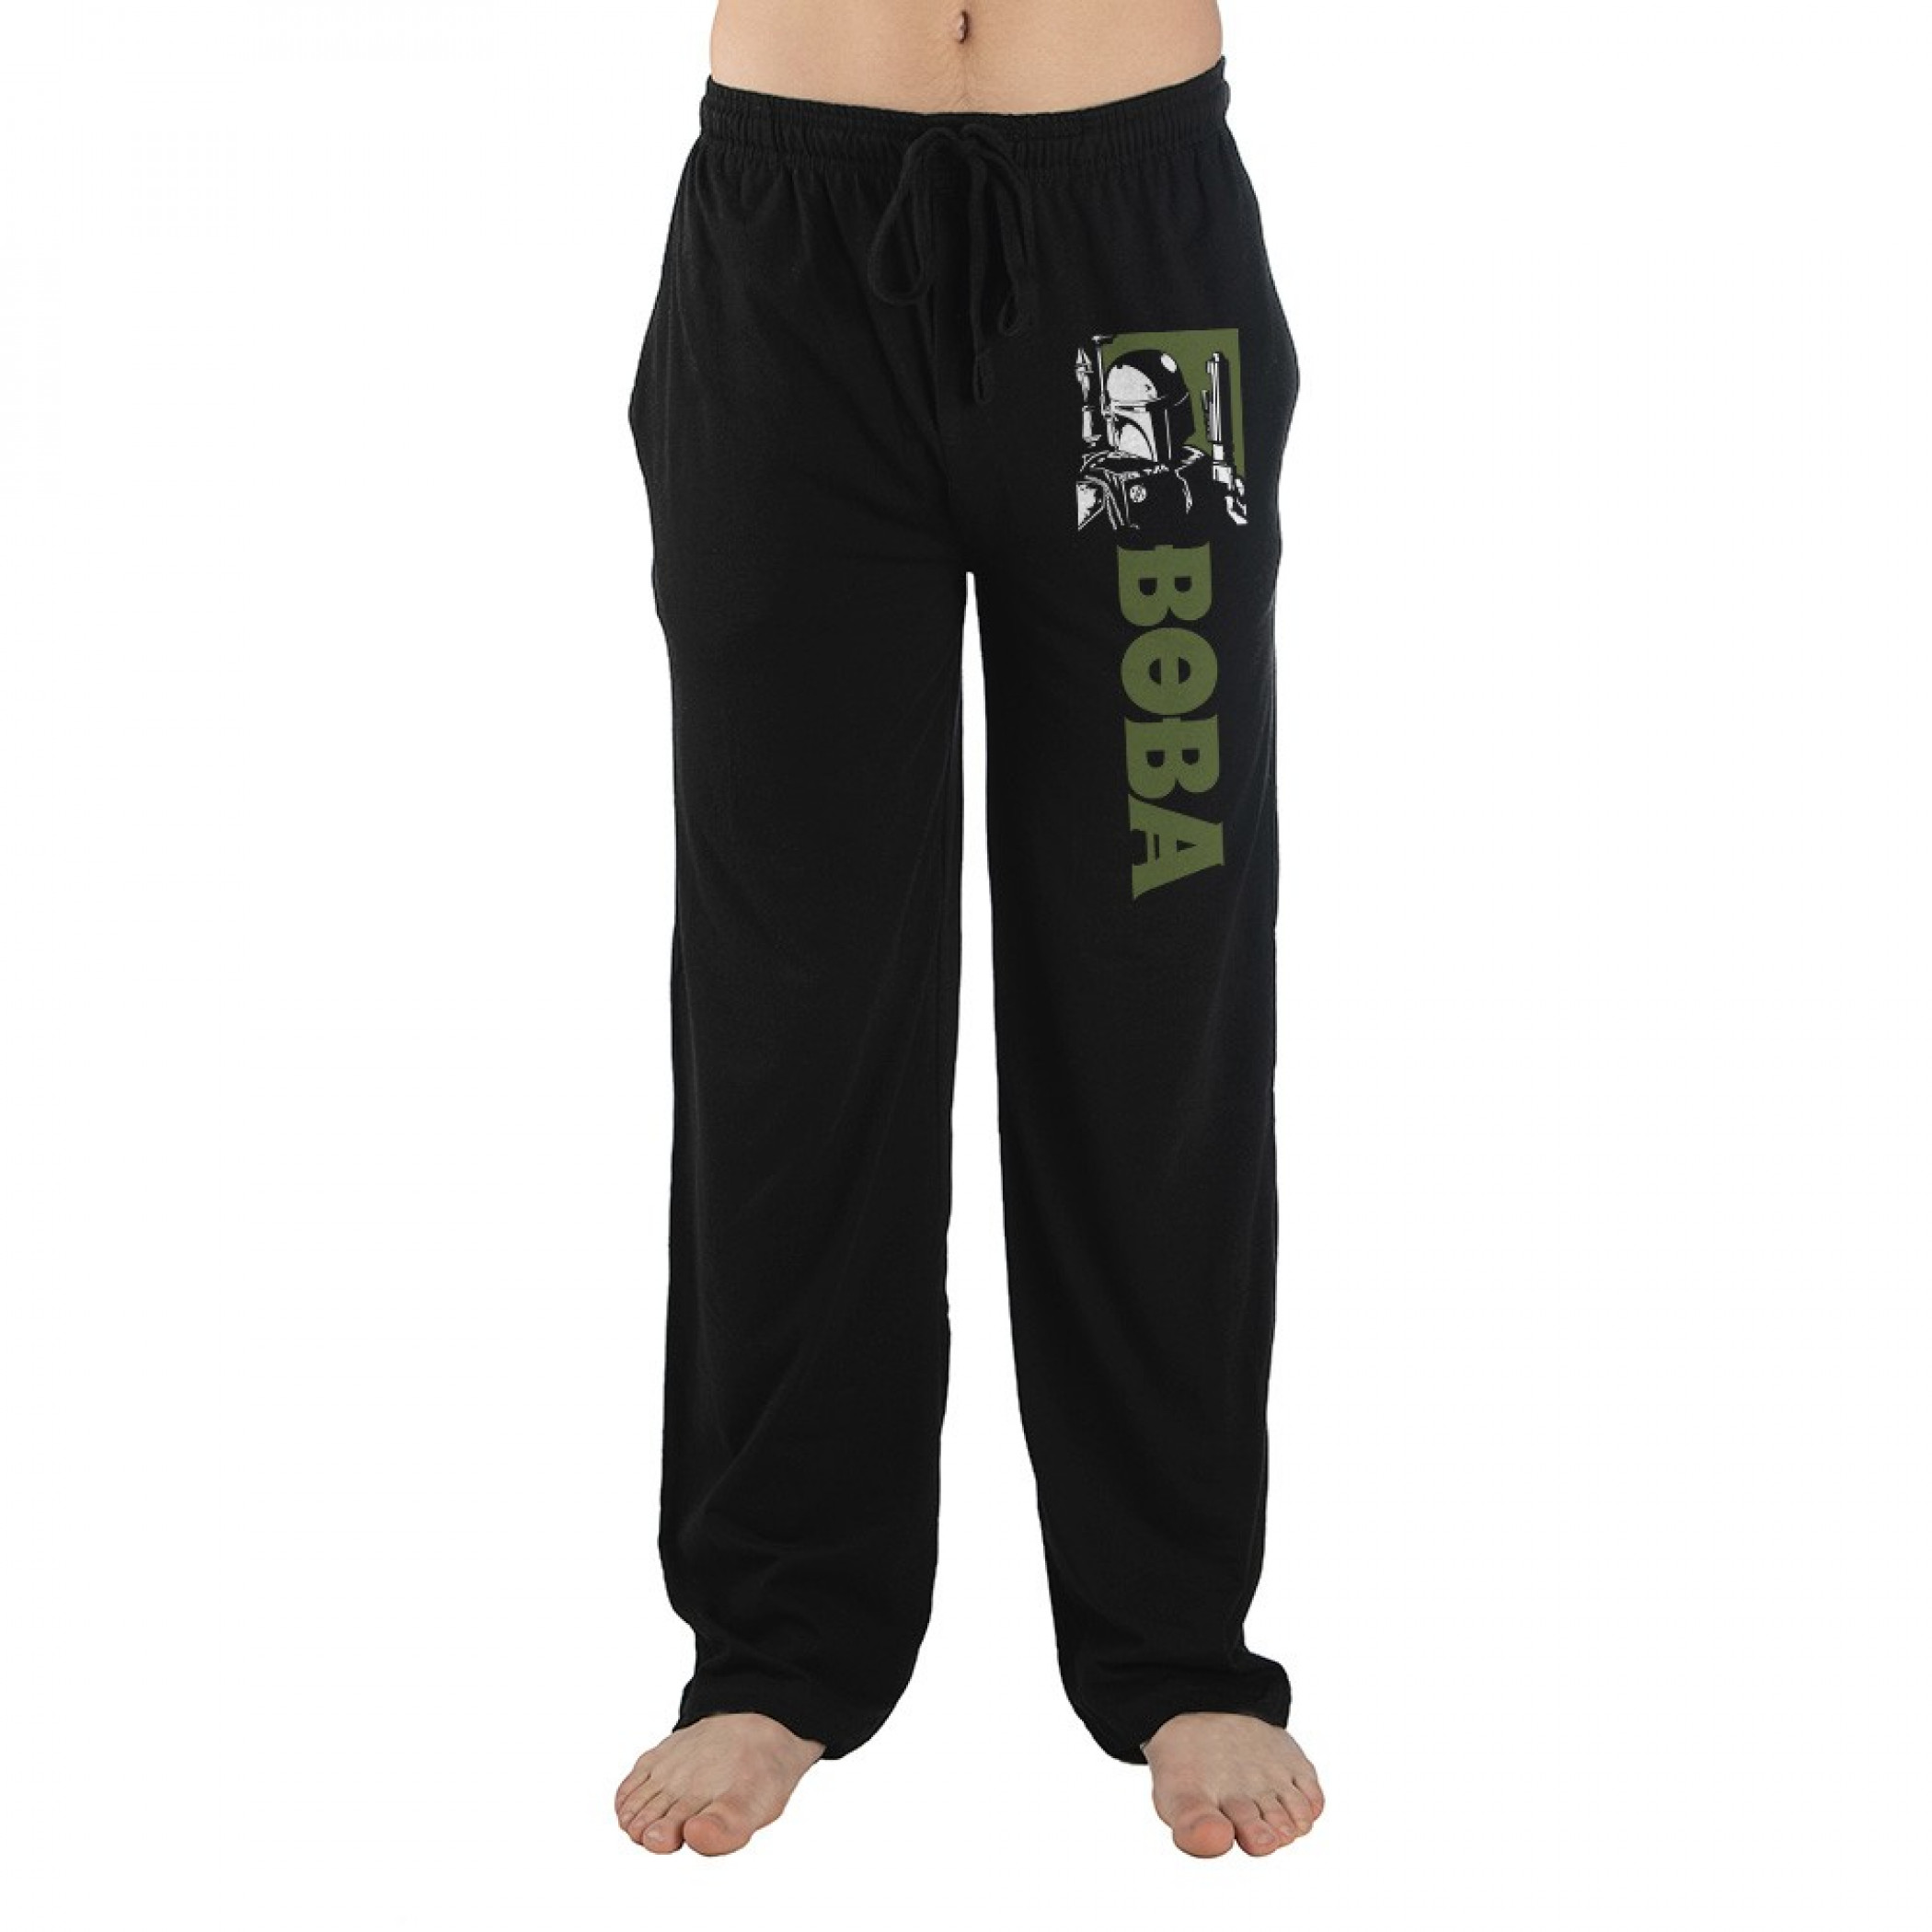 Star Wars Boba Fett Character Image and Text Pajama Sleep Pants